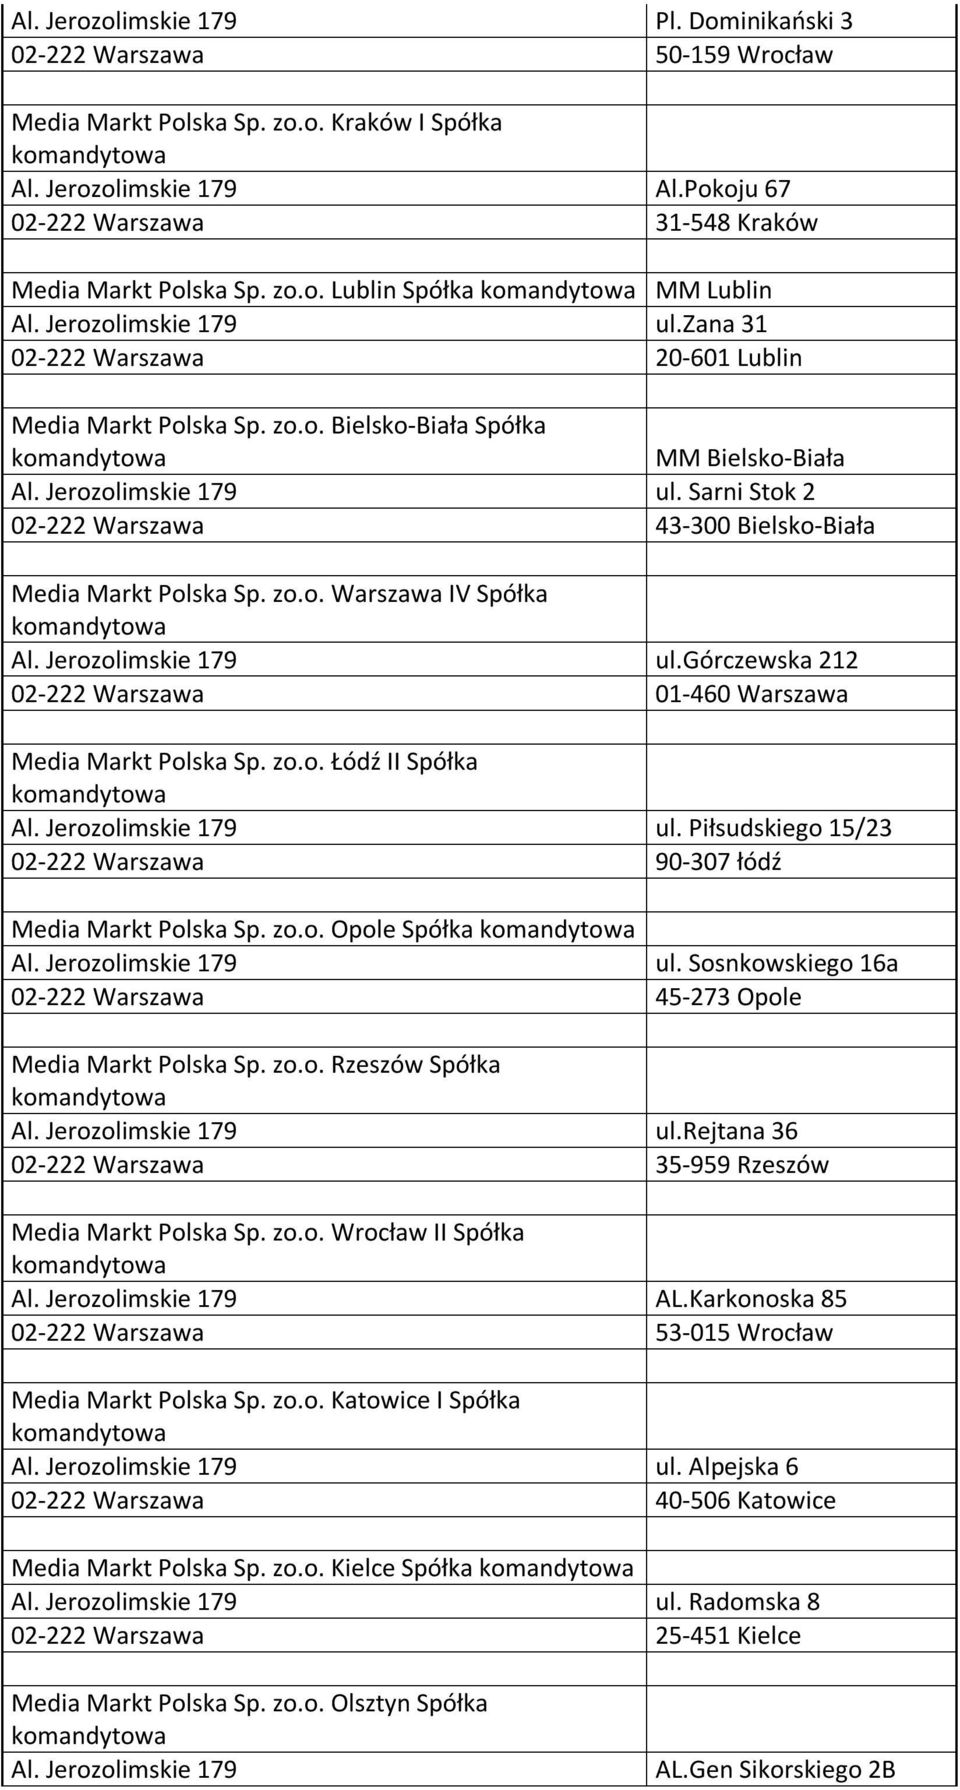 górczewska 212 01-460 Warszawa Media Markt Polska Sp. zo.o. Łódź II Spółka ul. Piłsudskiego 15/23 90-307 łódź Media Markt Polska Sp. zo.o. Opole Spółka ul.